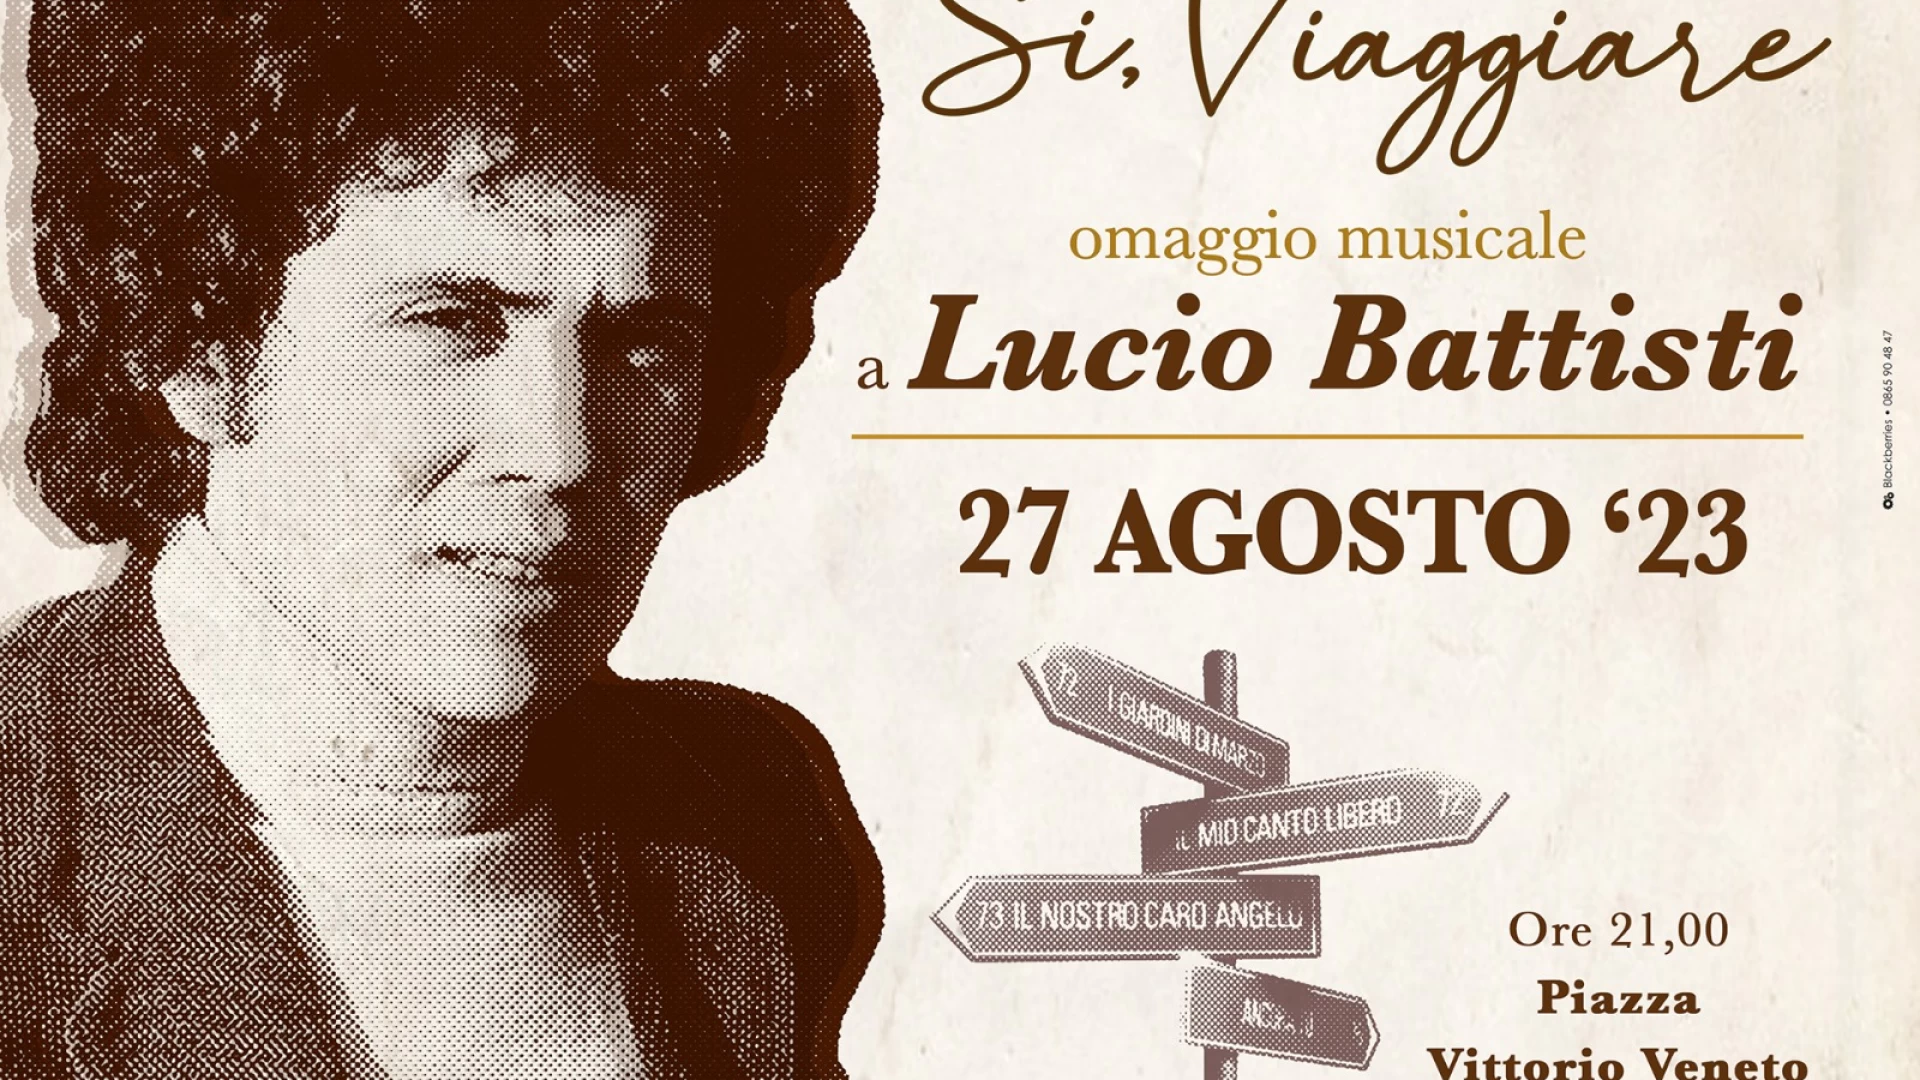 Venafro: domenica 27 agosto la settima edizione dell’Omaggio Musicale a Lucio Battisti. Evento organizzato dal Collettivo Divergente.